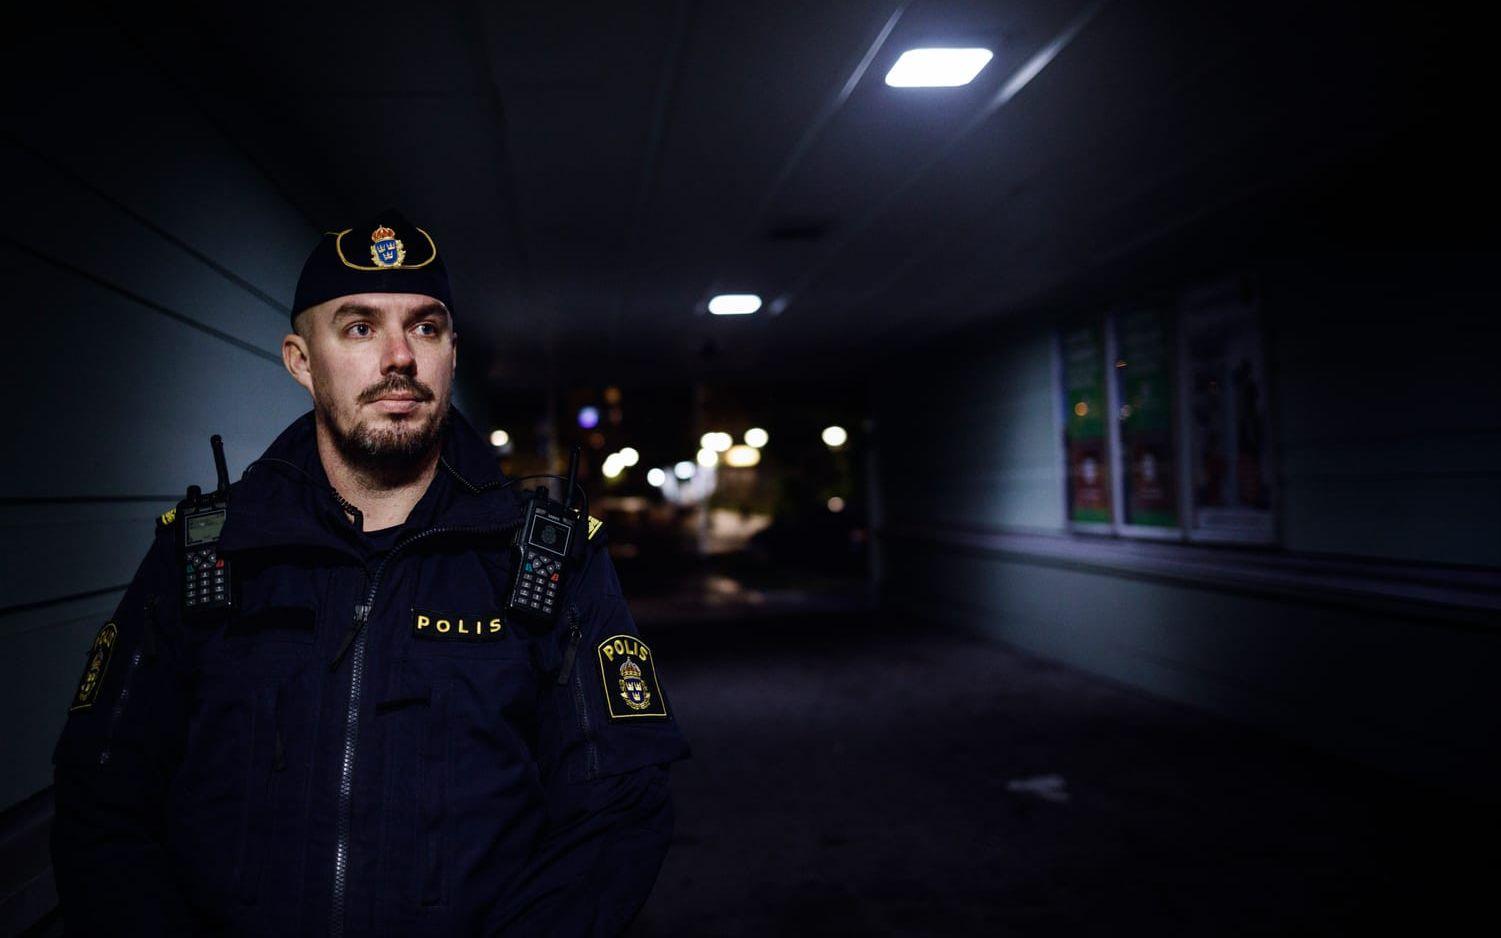 Mikael Folkesson arbetade som områdespolis i samma grupp som Andreas Danman på Hisingens polisstation.